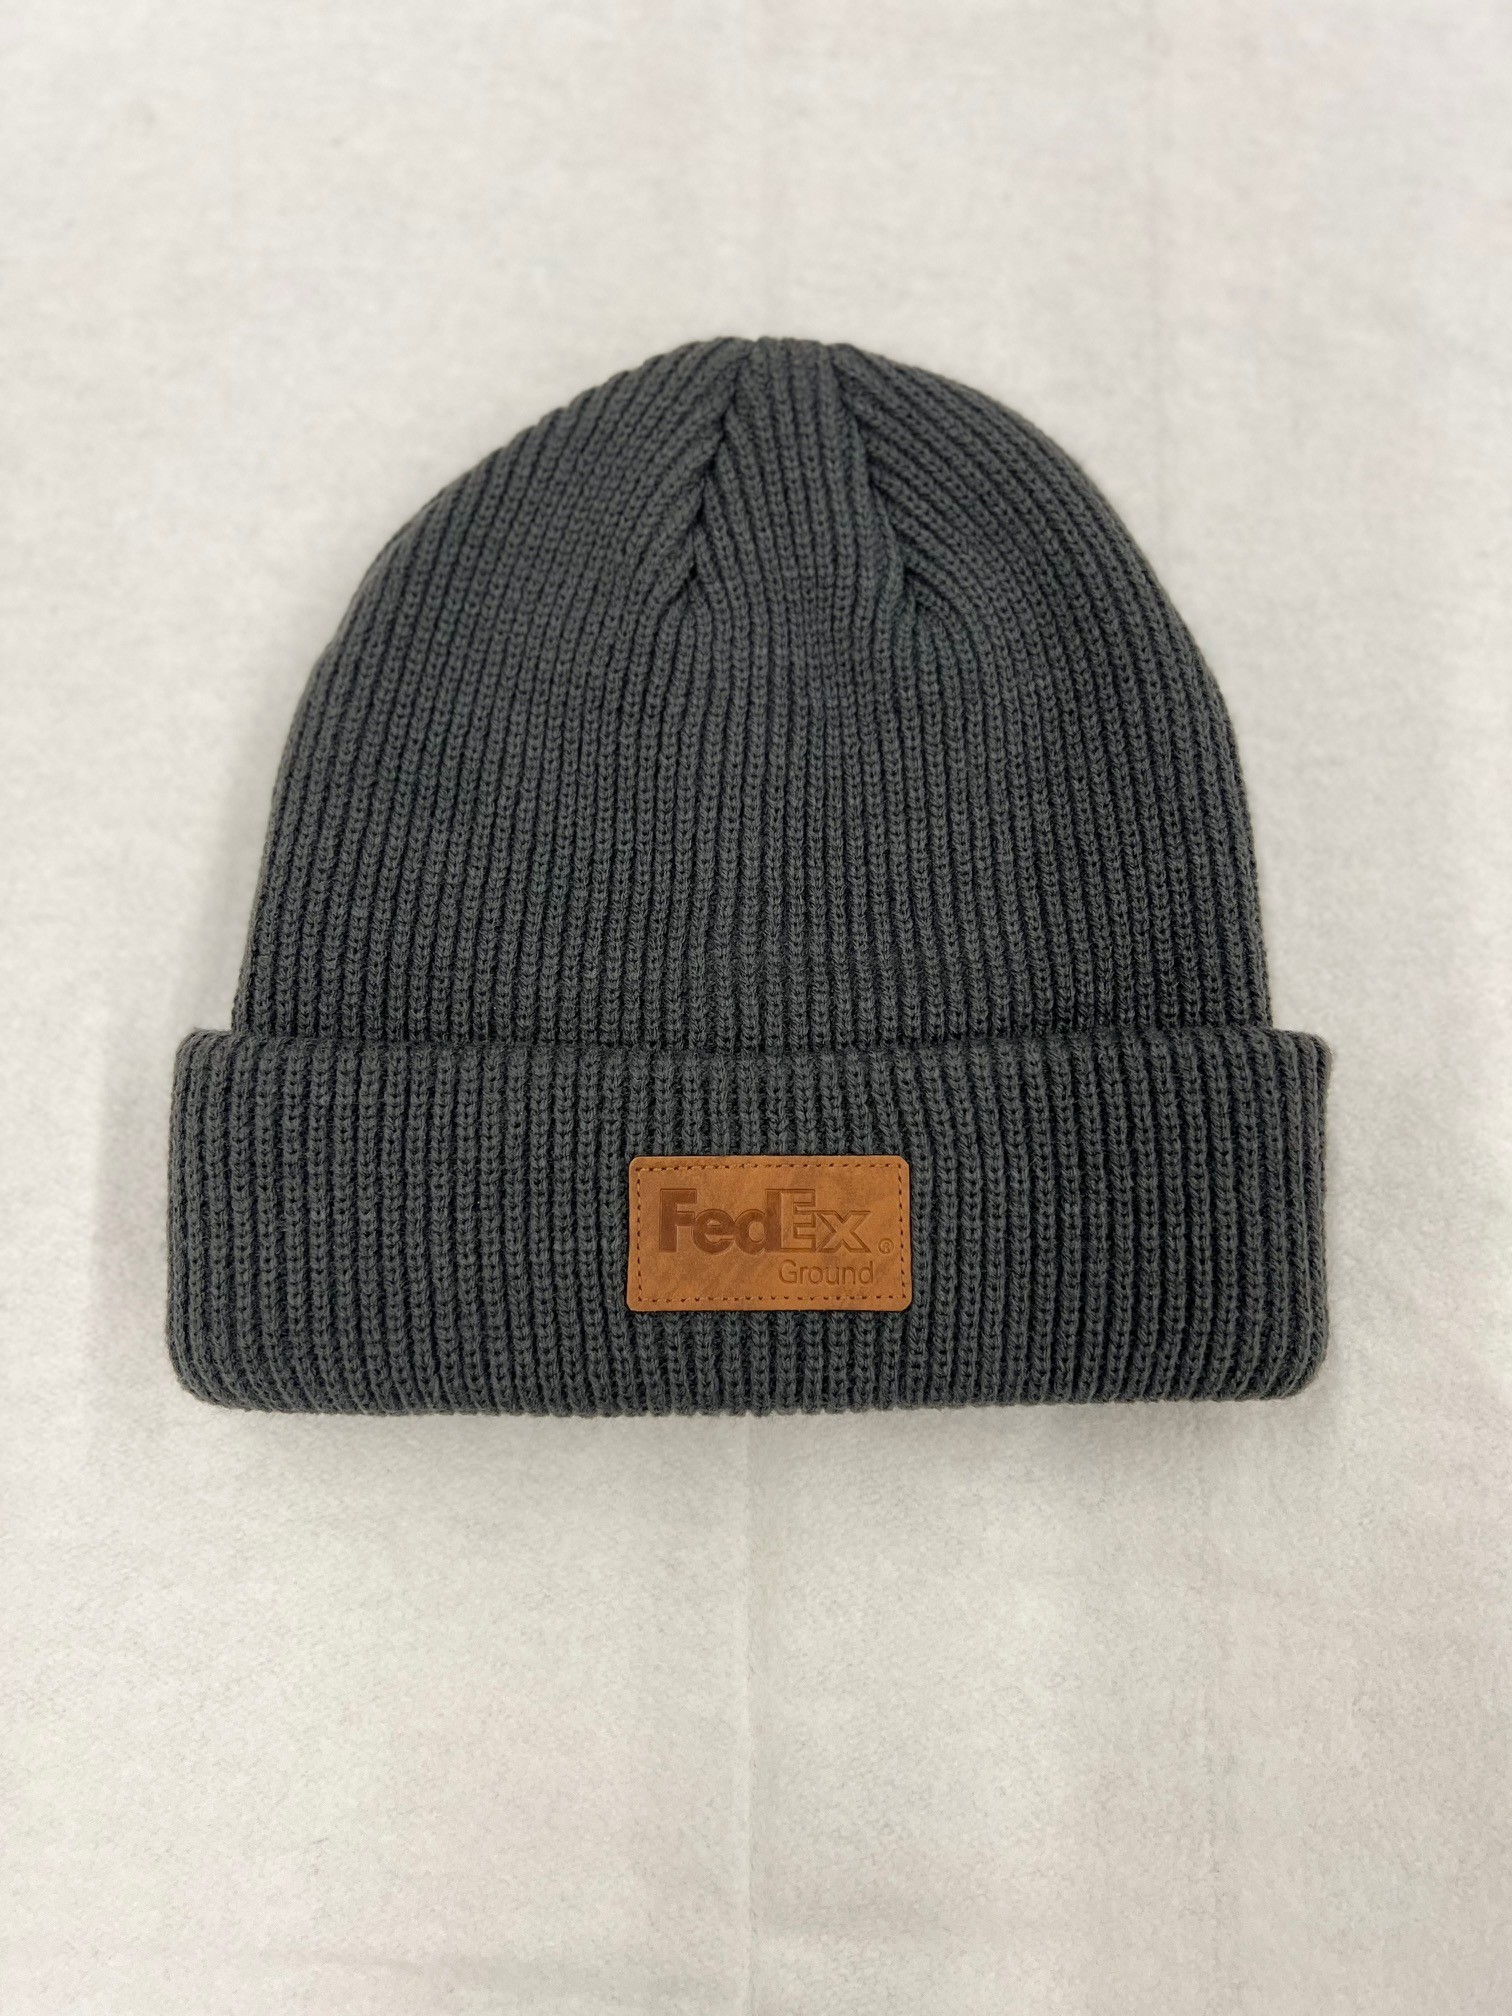 Fedex - HEAVYWEIGHT KNIT CAP